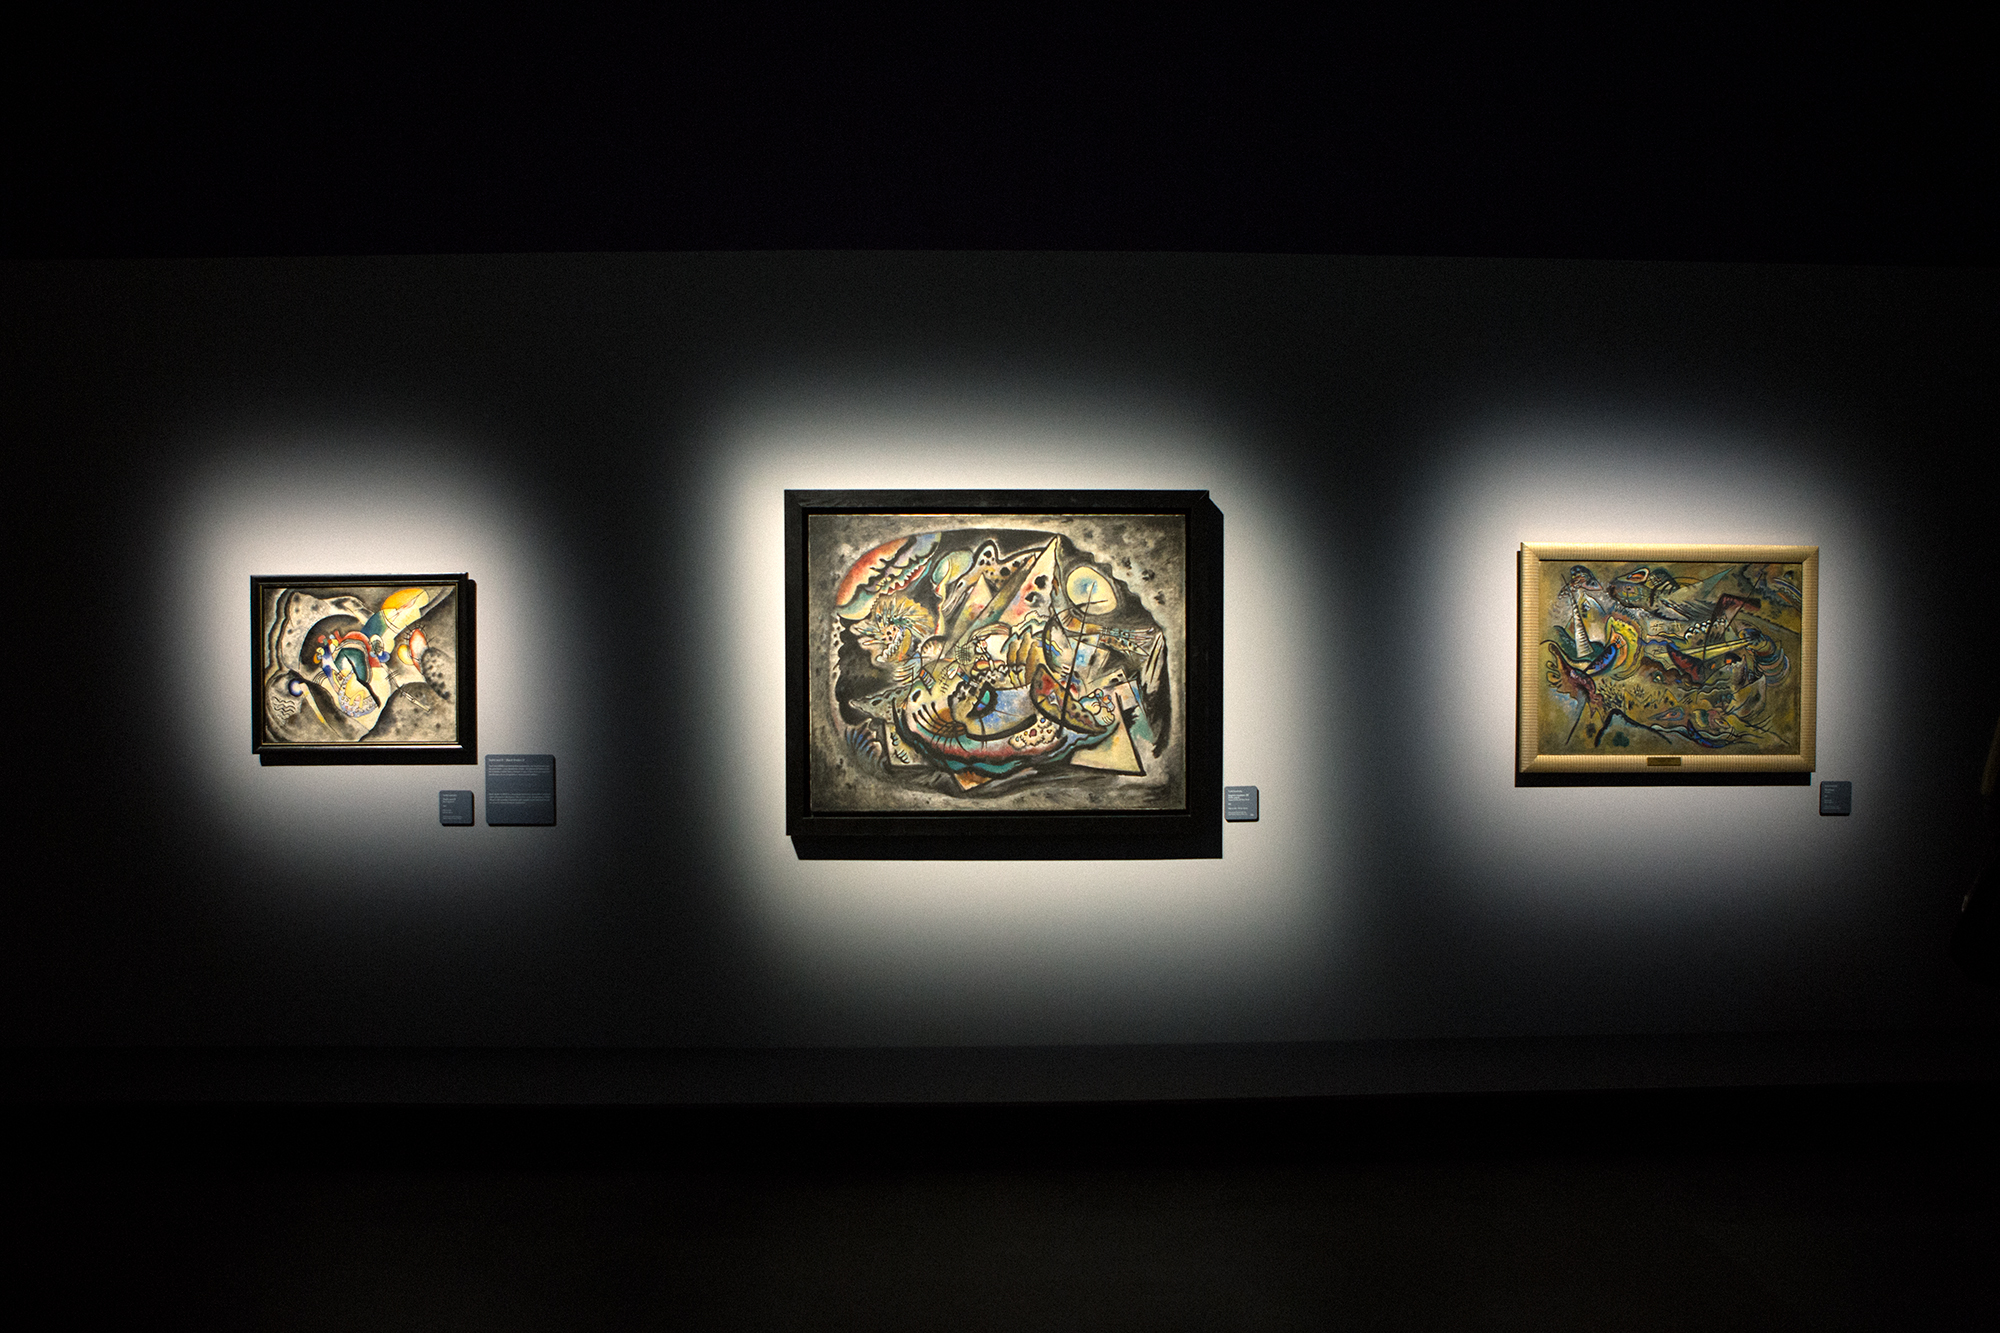 Vasilij Kandinskij è considerato l’artista che diede anima al colore. Tuttavia, prima di occuparsi seriamente di pittura, conseguì una laurea in giurisprudenza all'Università di Mosca. Ma a 30 anni decise di dedicarsi definitivamente alla pittura